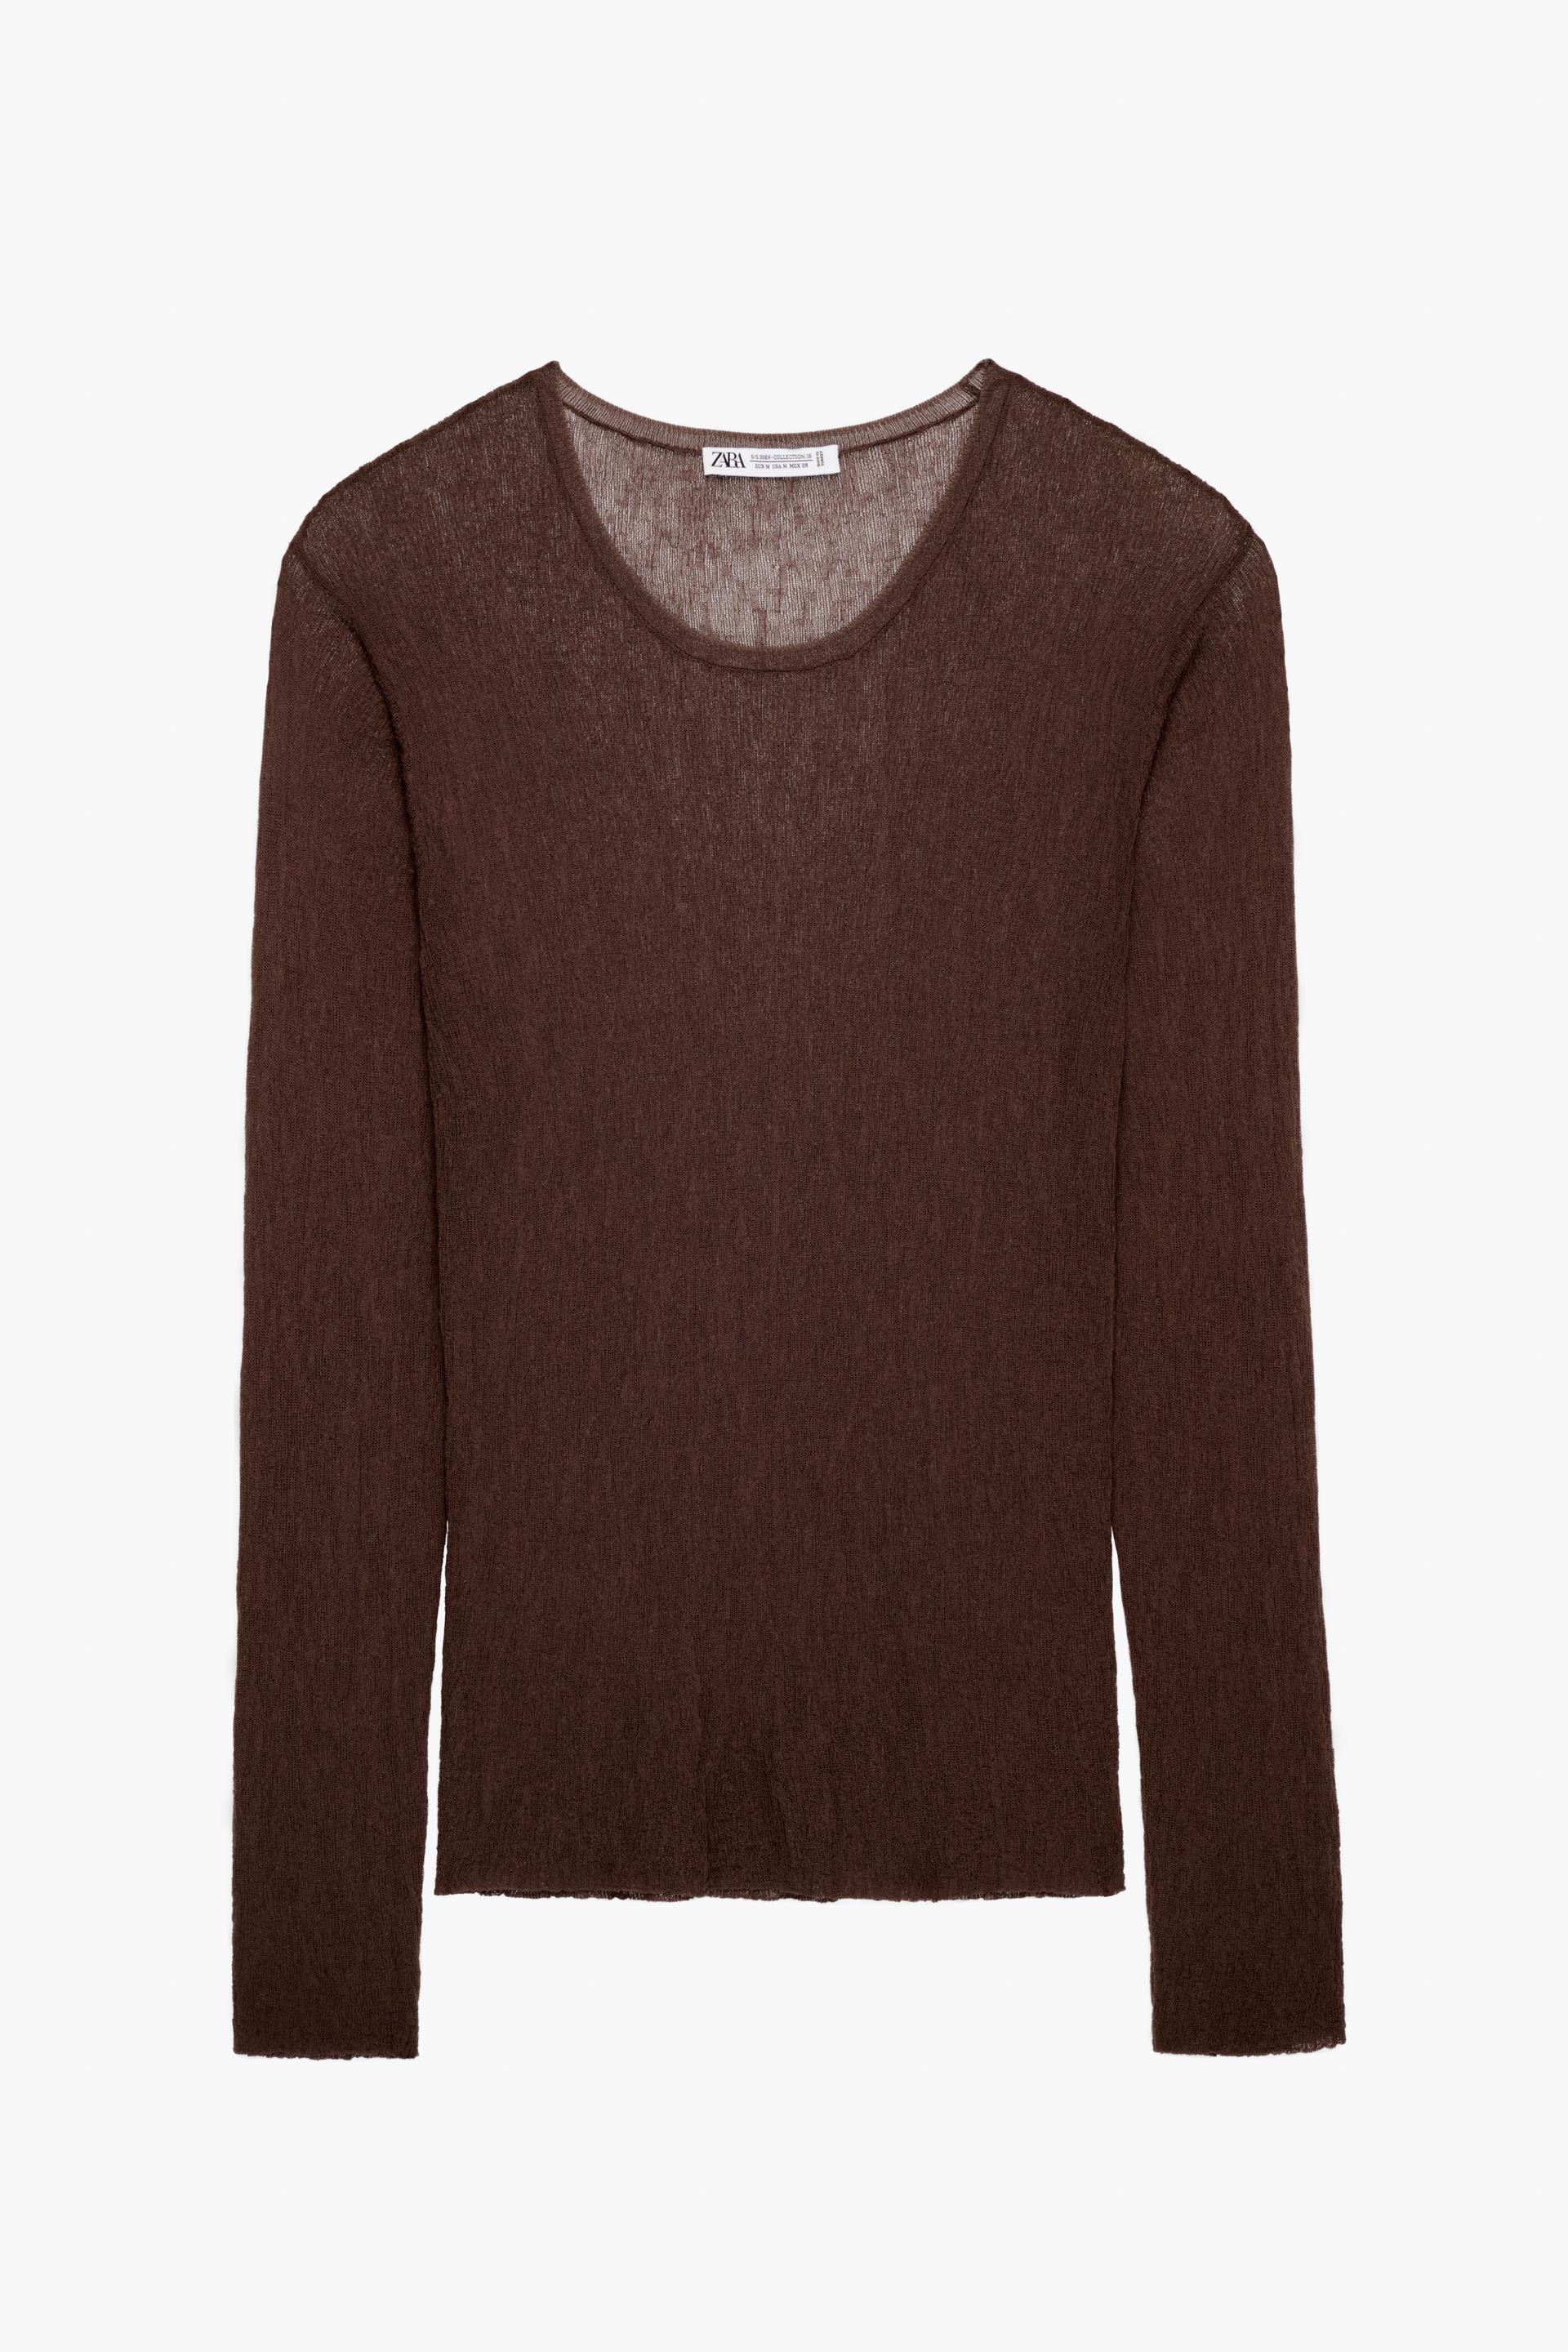 свитер zara textured x casa josephine мультиколор Свитер Zara Textured Limited Edition, коричневый